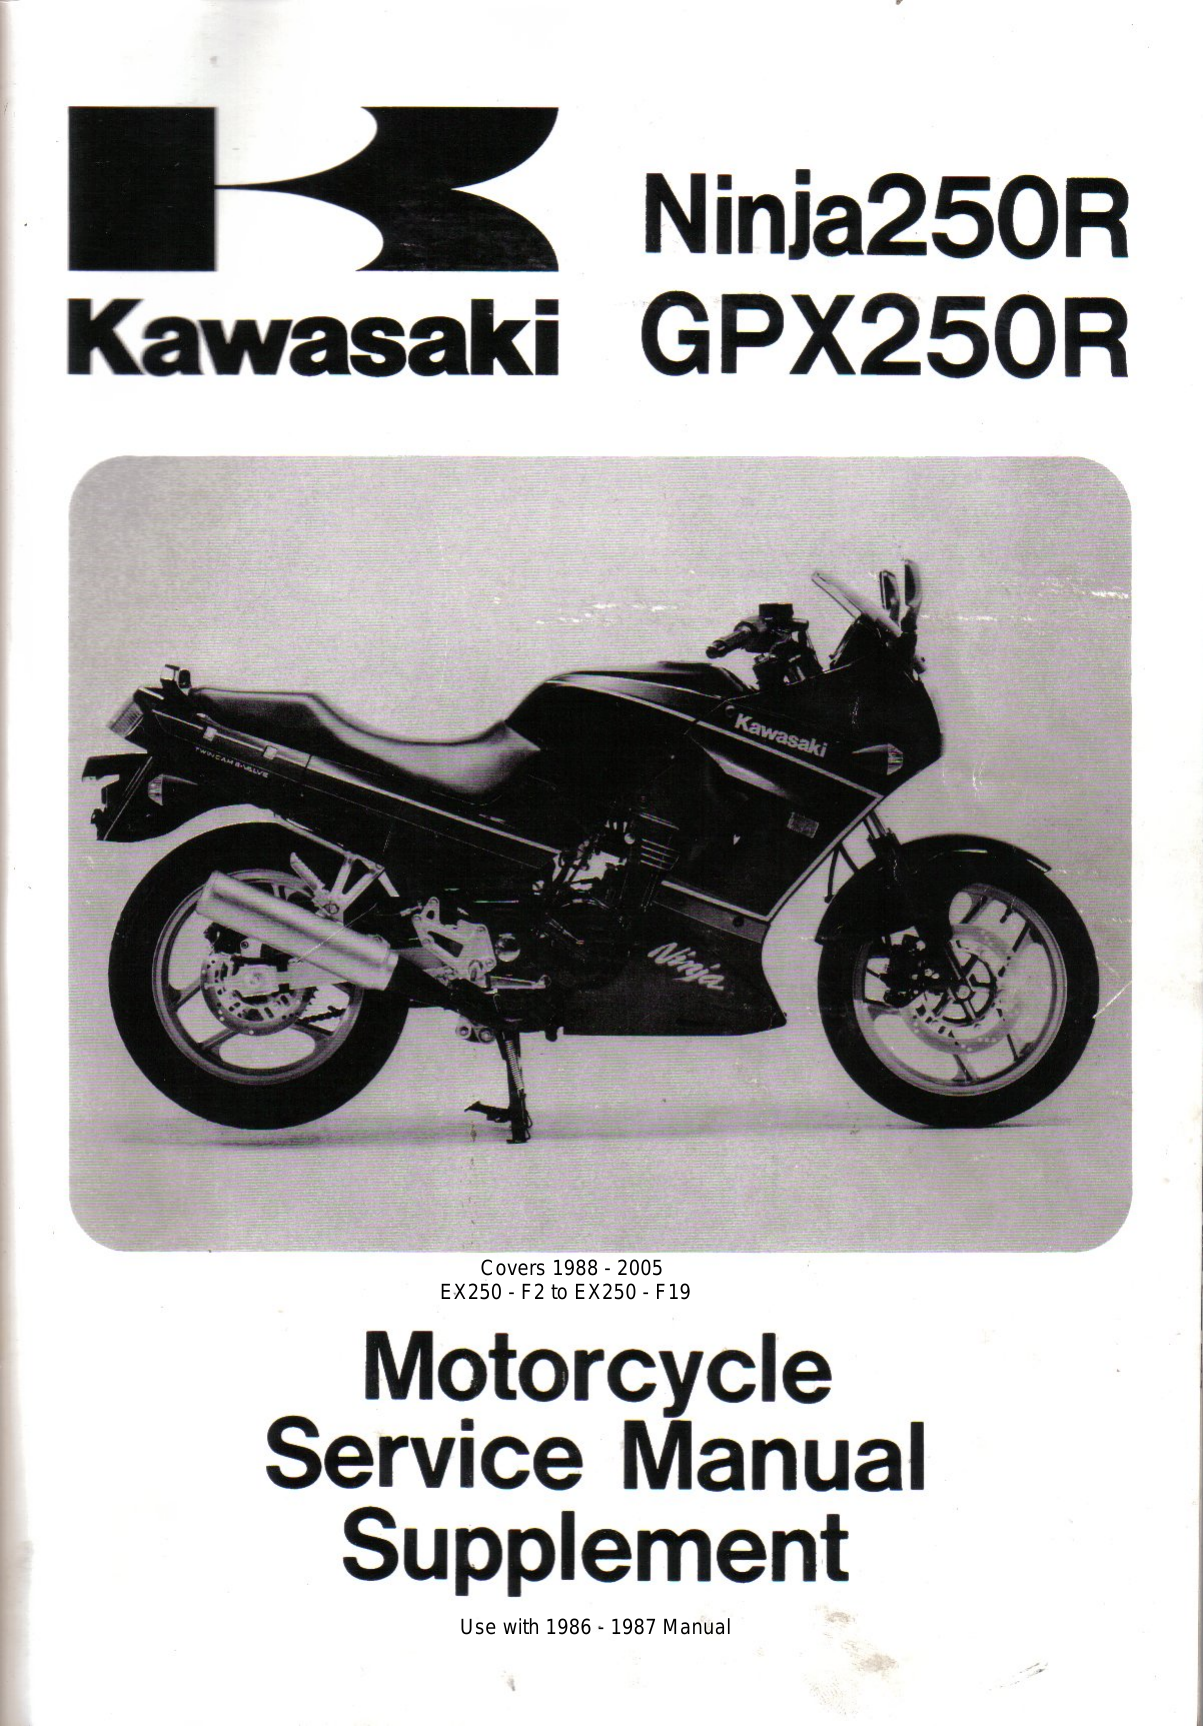 1988-2007 Kawasaki Ninja 250R, GPX250R repair manual Preview image 6